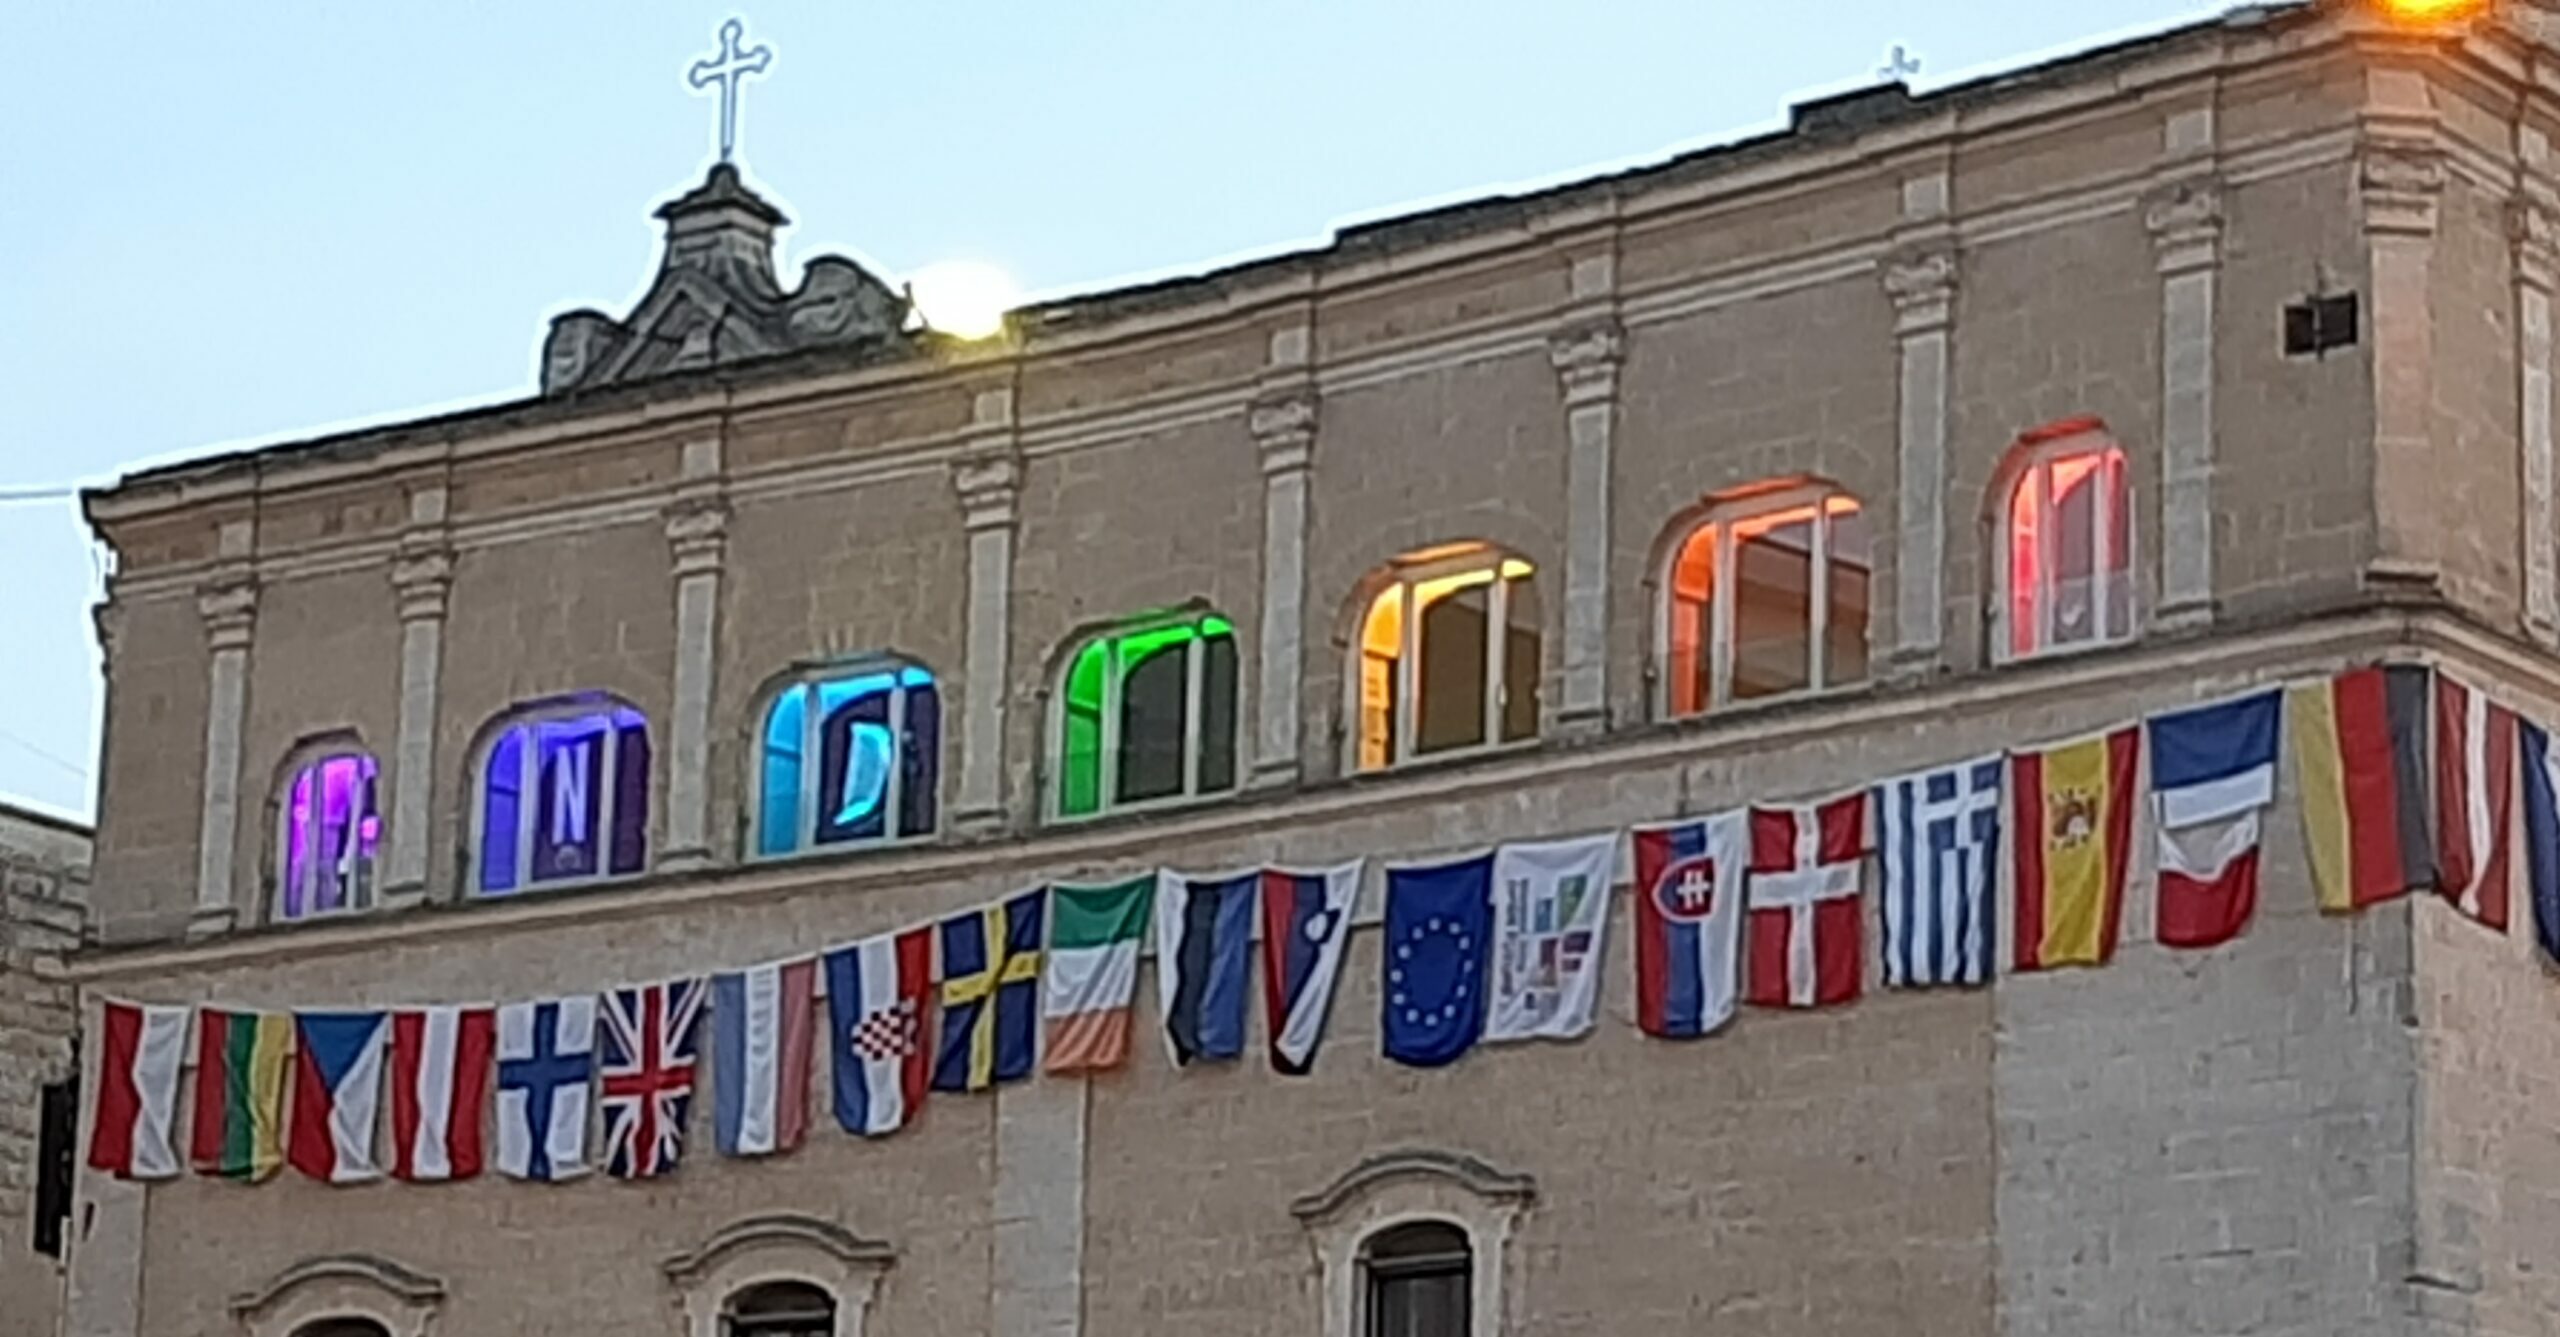 No alla guerra: la sede della Fondazione Matera Basilicata 2019 illuminata con i colori della bandiera della pace